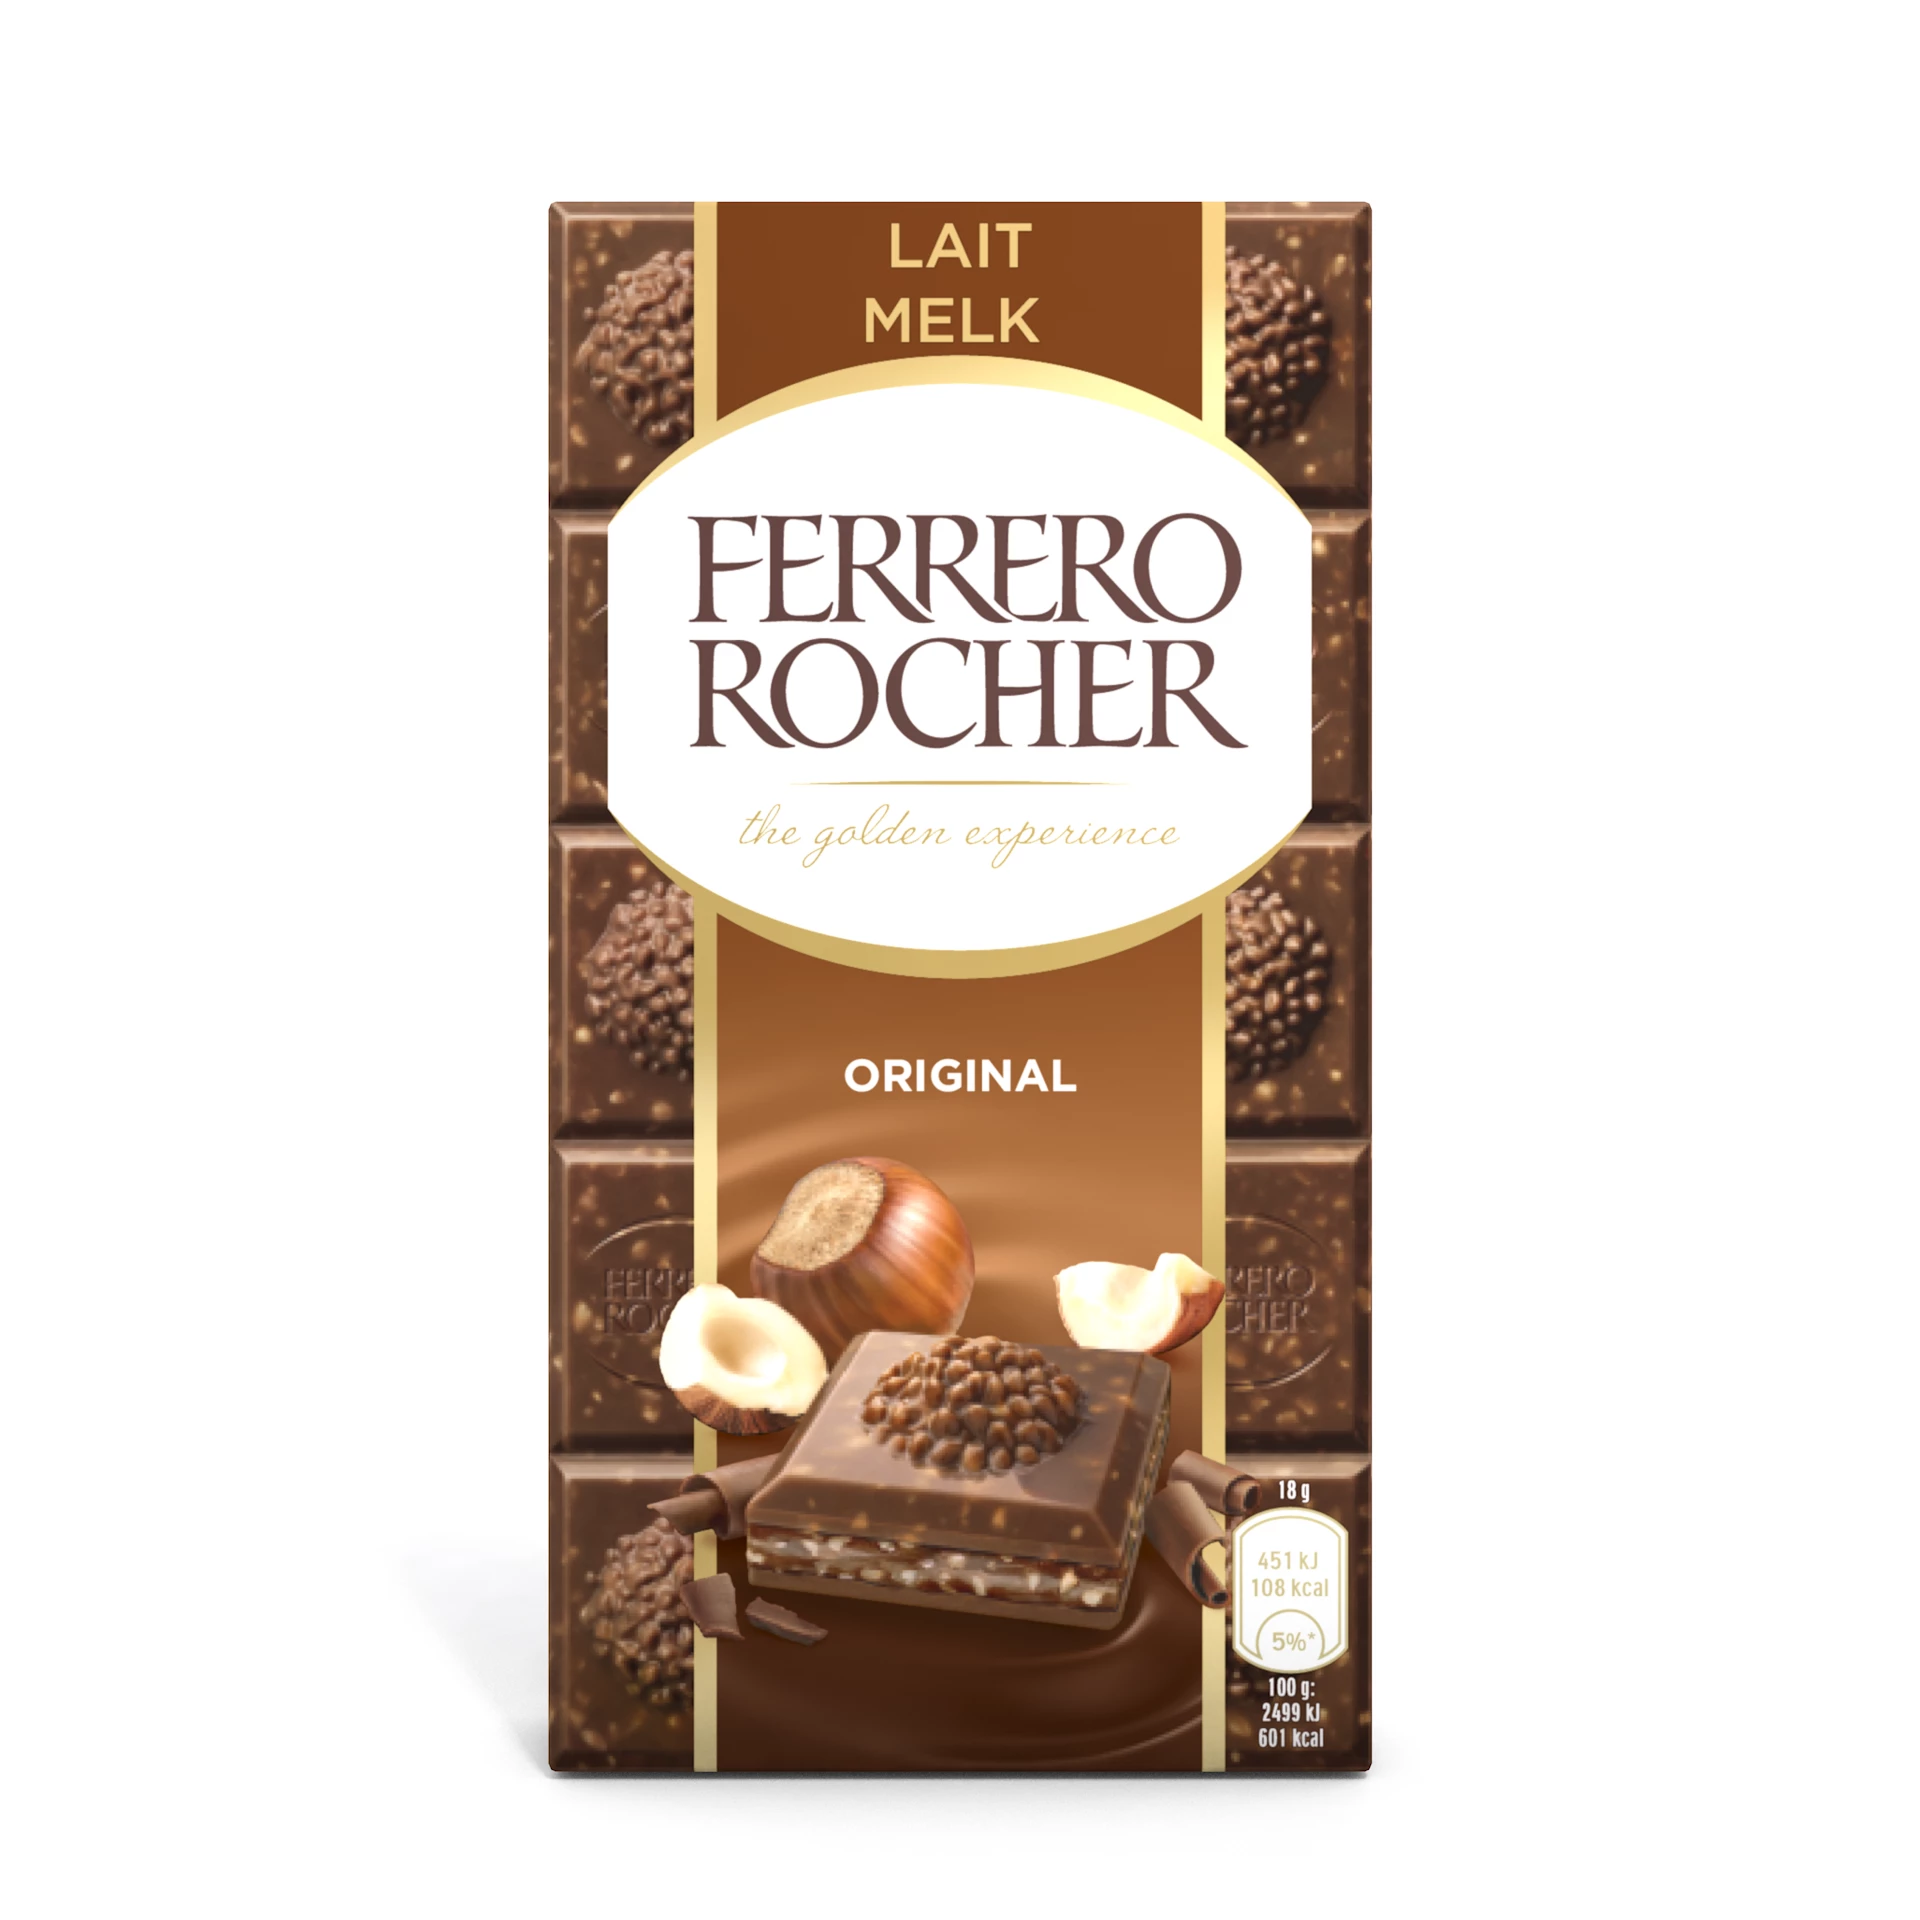 Ferrero Rocher Hazelnut Milk, 90g - FERRERO